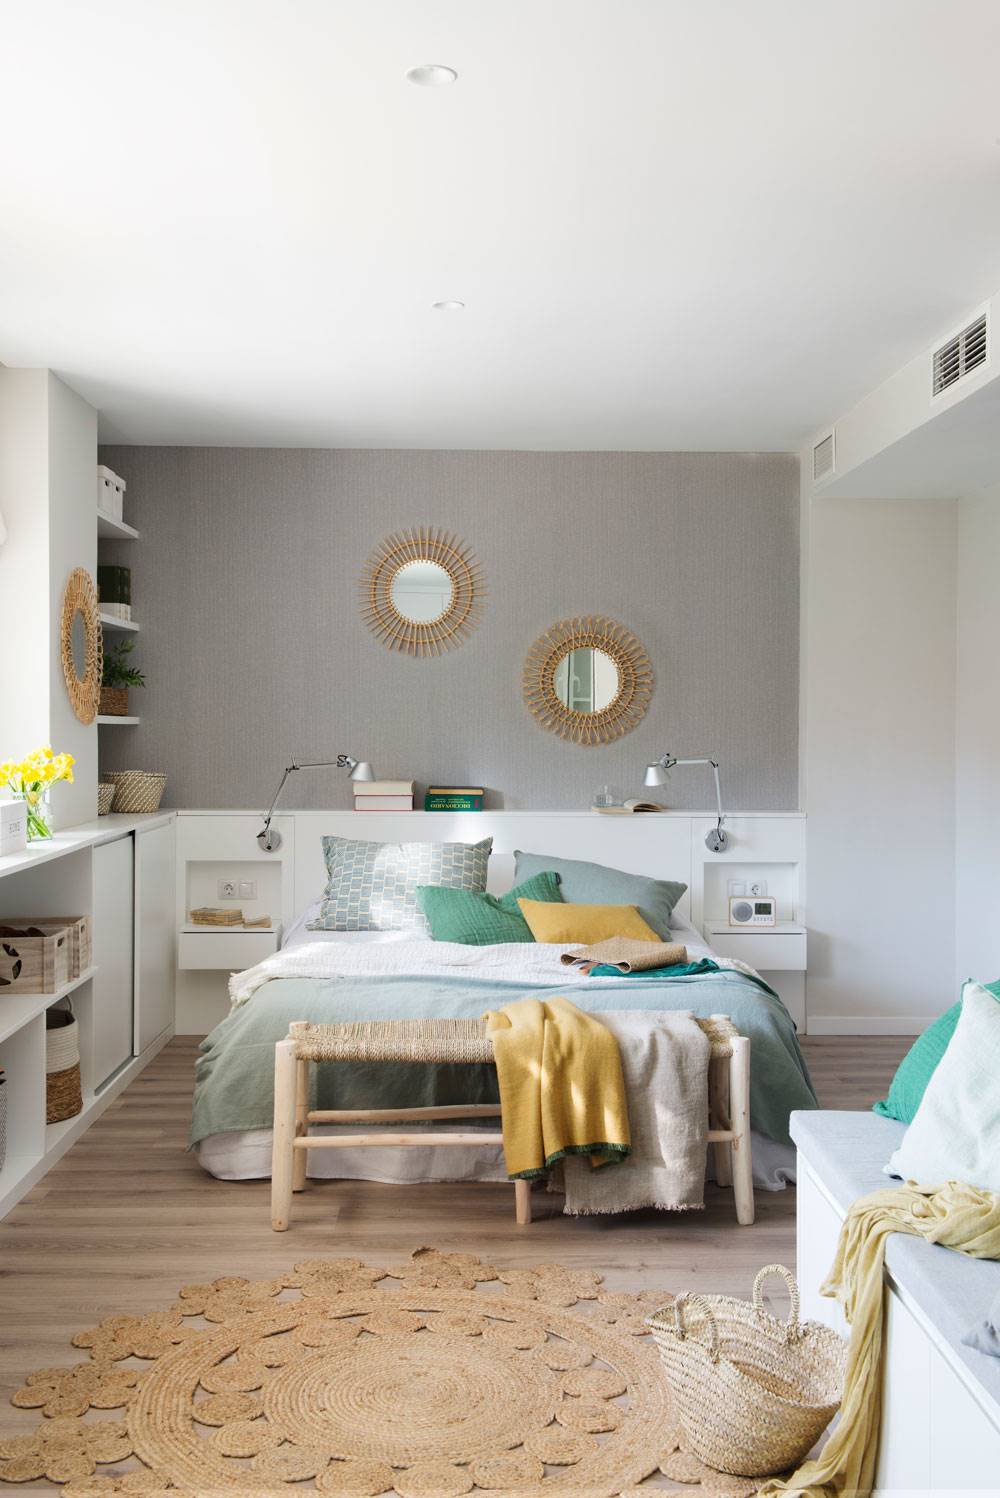 Dormitorio juvenil decorado en color mint con fibras naturales 00483150